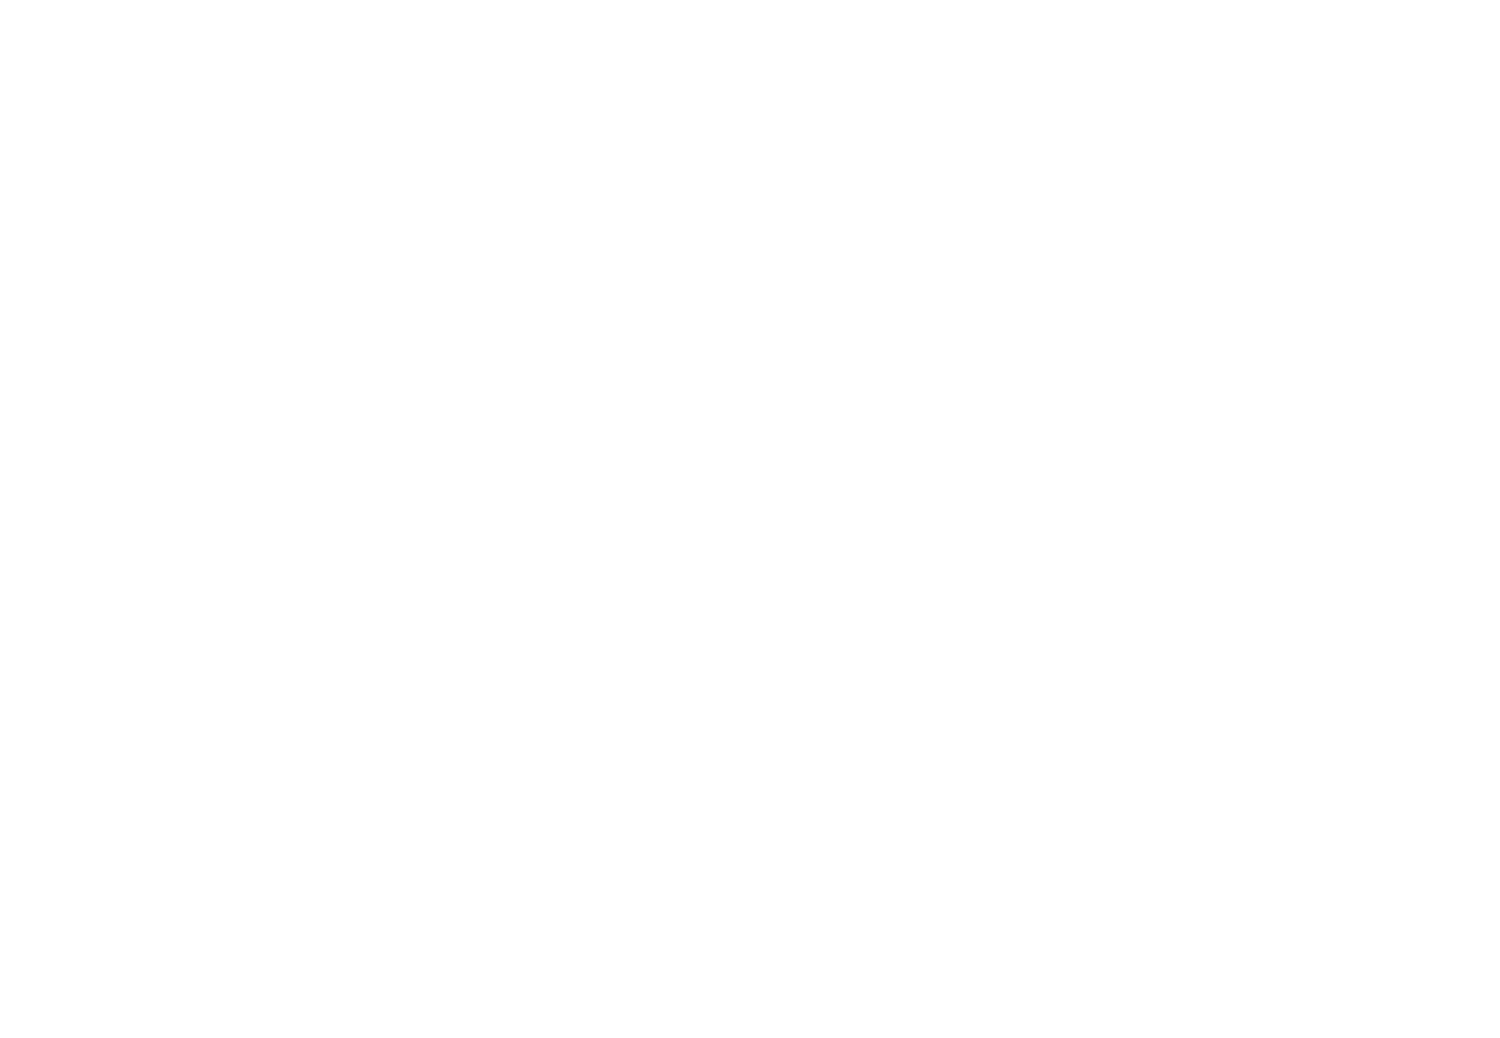 McGuffey Art Center